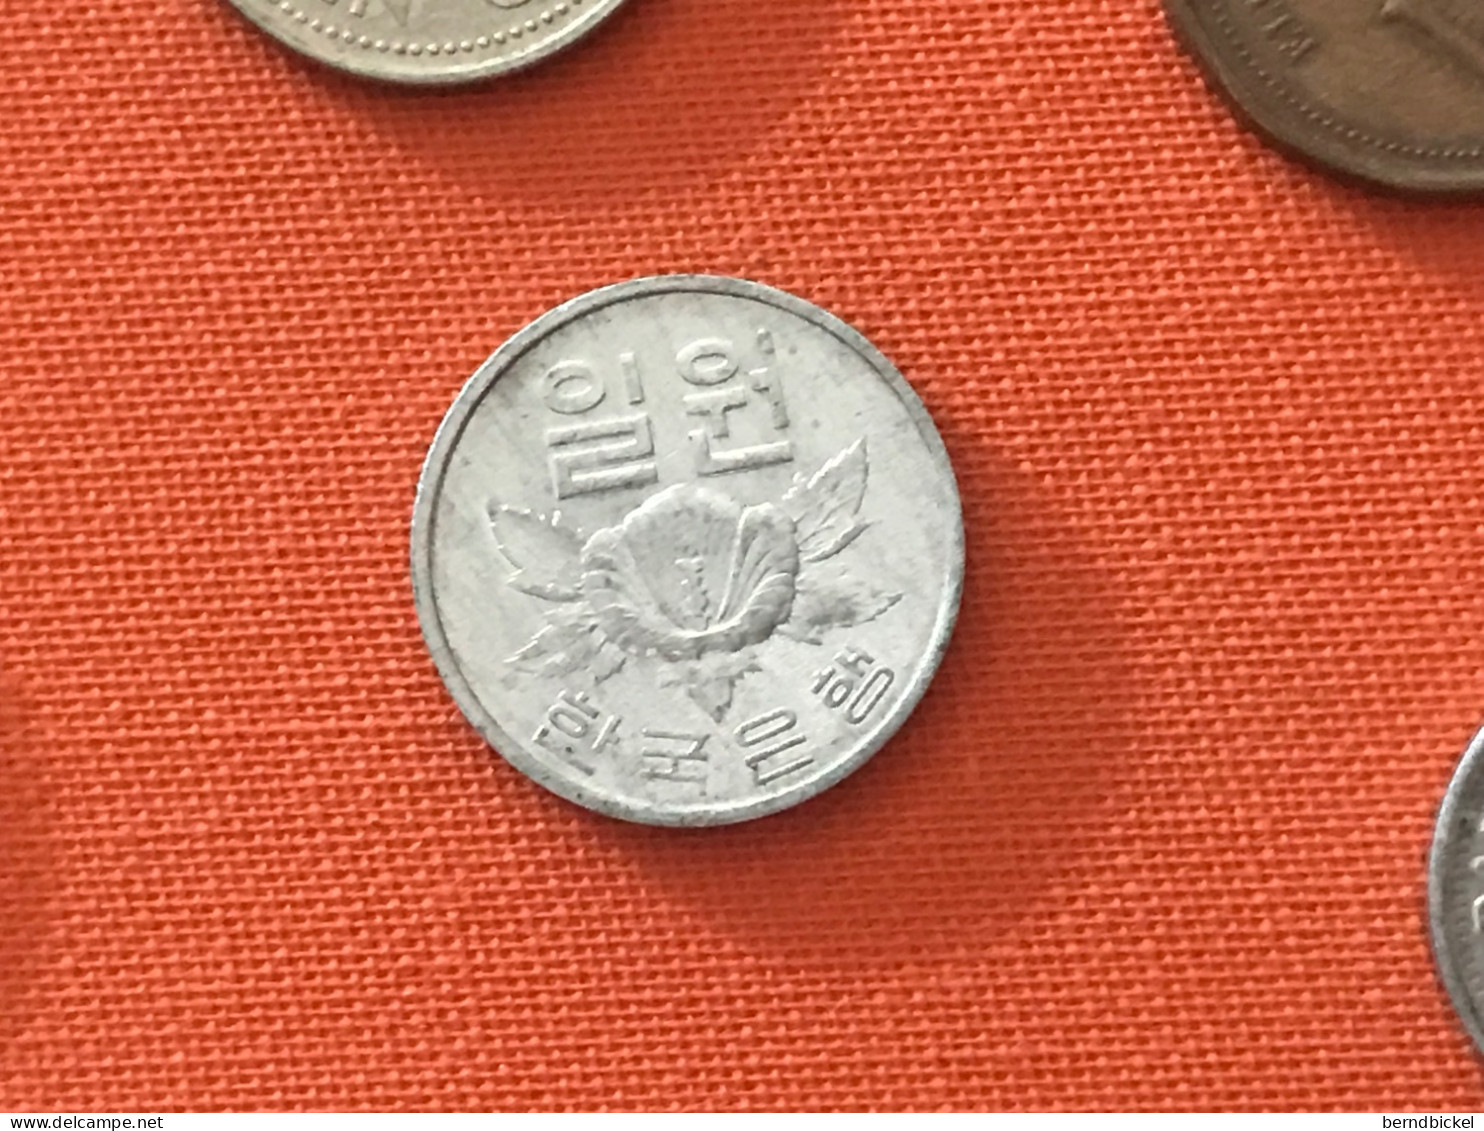 Münze Münzen Umlaufmünze Südkorea 1 Won 1970 - Korea (Süd-)